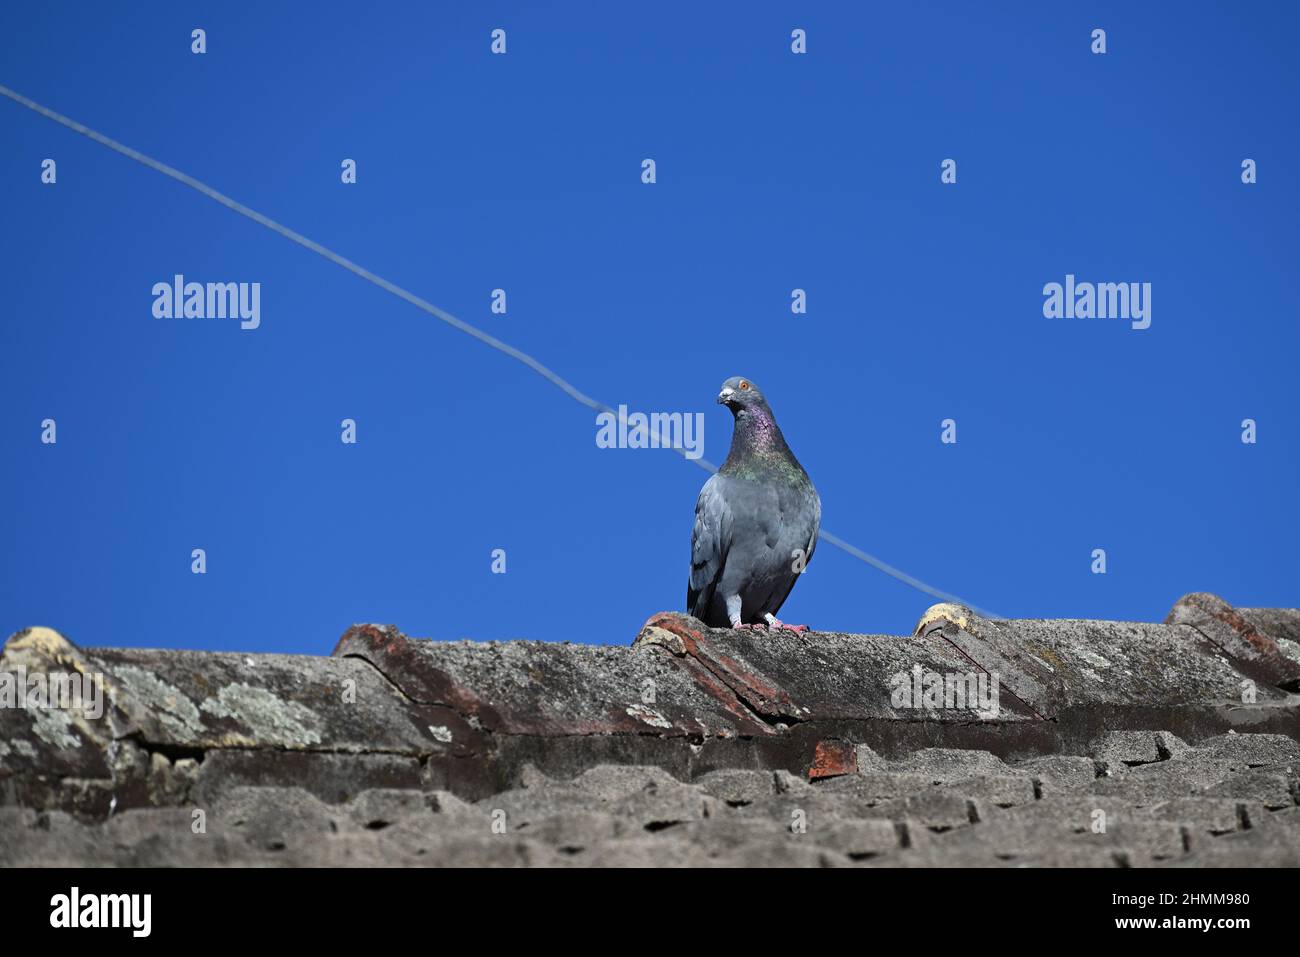 Steintaube, oder gewöhnliche Taube, späht nach unten, während sie an einem klaren Sommertag auf einem verwitterten Ziegeldach steht Stockfoto